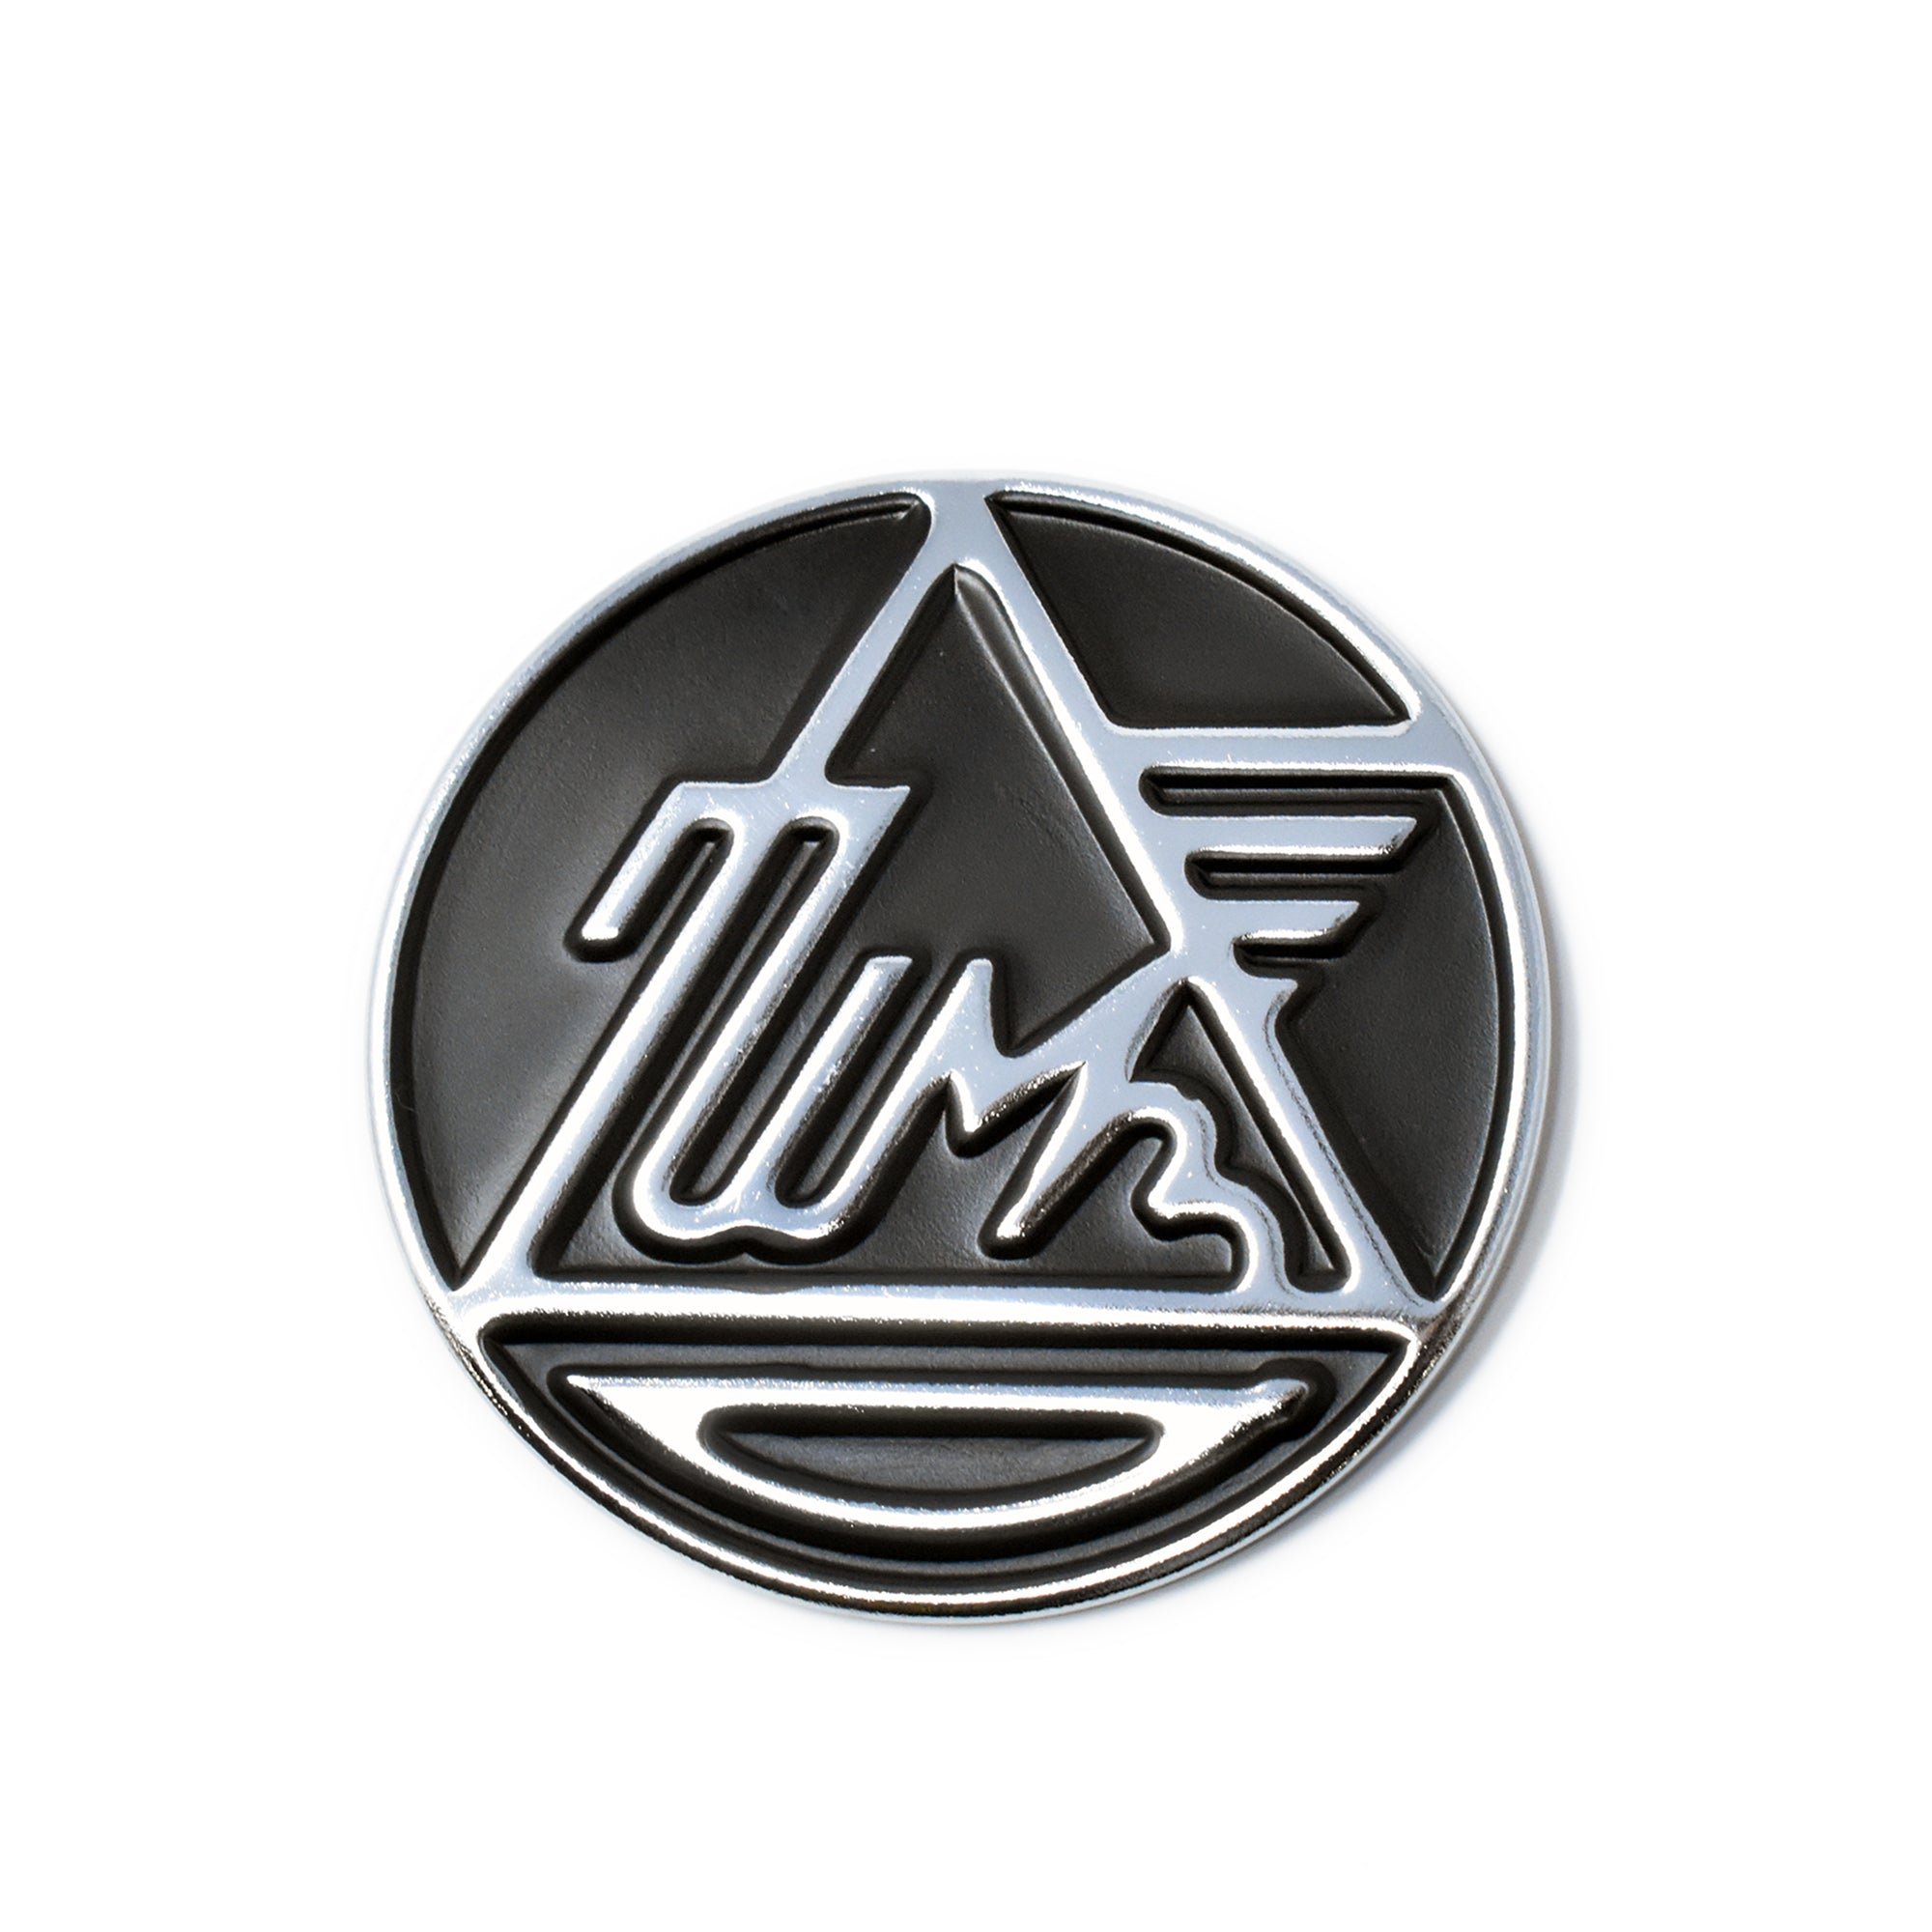 Ural Logo Metal Fuel Tank Badge 5.5cm Round